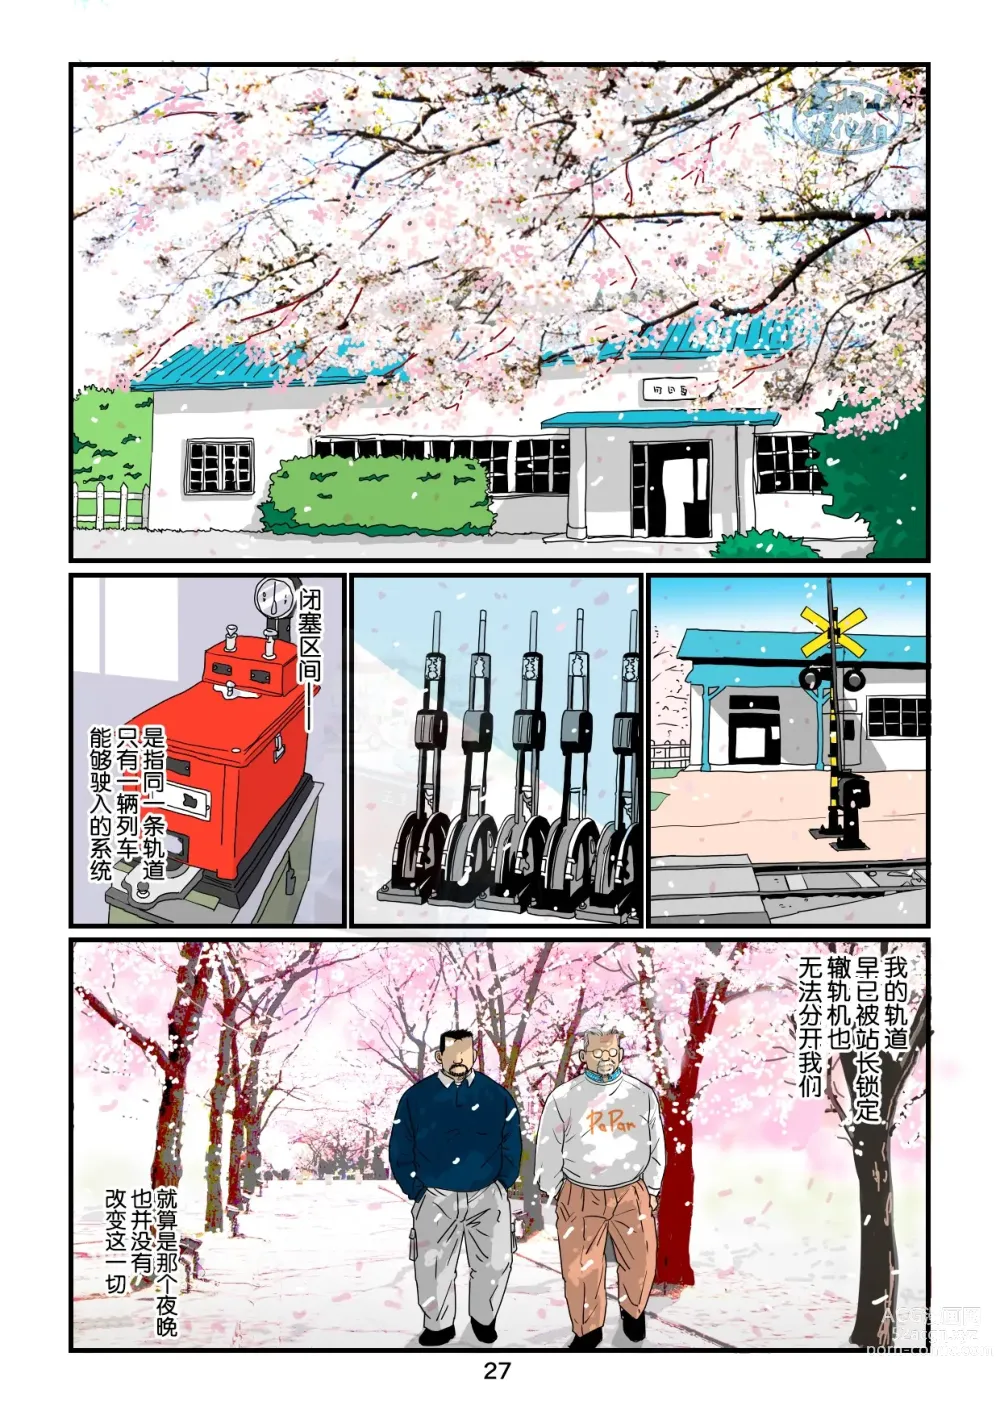 Page 27 of manga 「铁道员的浪漫」 第四回 站长和铁道员的前路